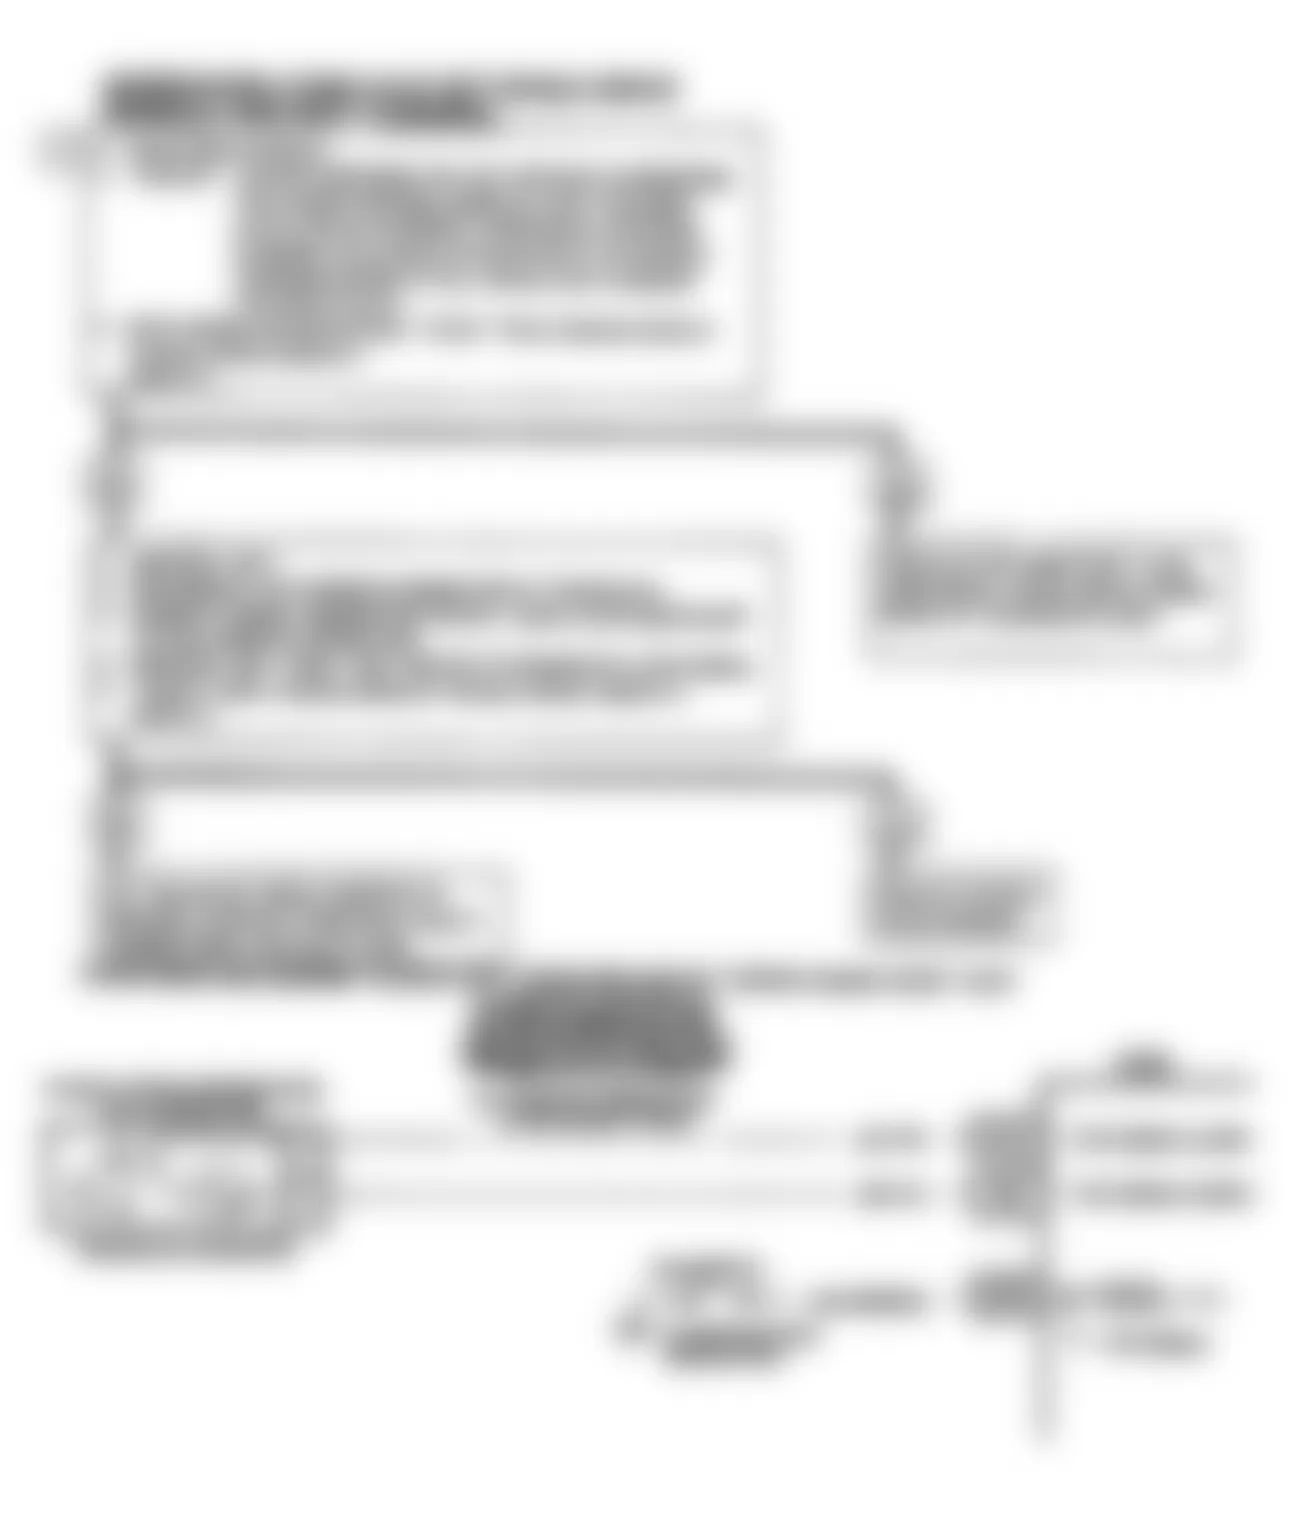 Chevrolet Beretta GT 1990 - Component Locations -  Code 24, VSS Ckt Diag & Flow Chart (J Body)